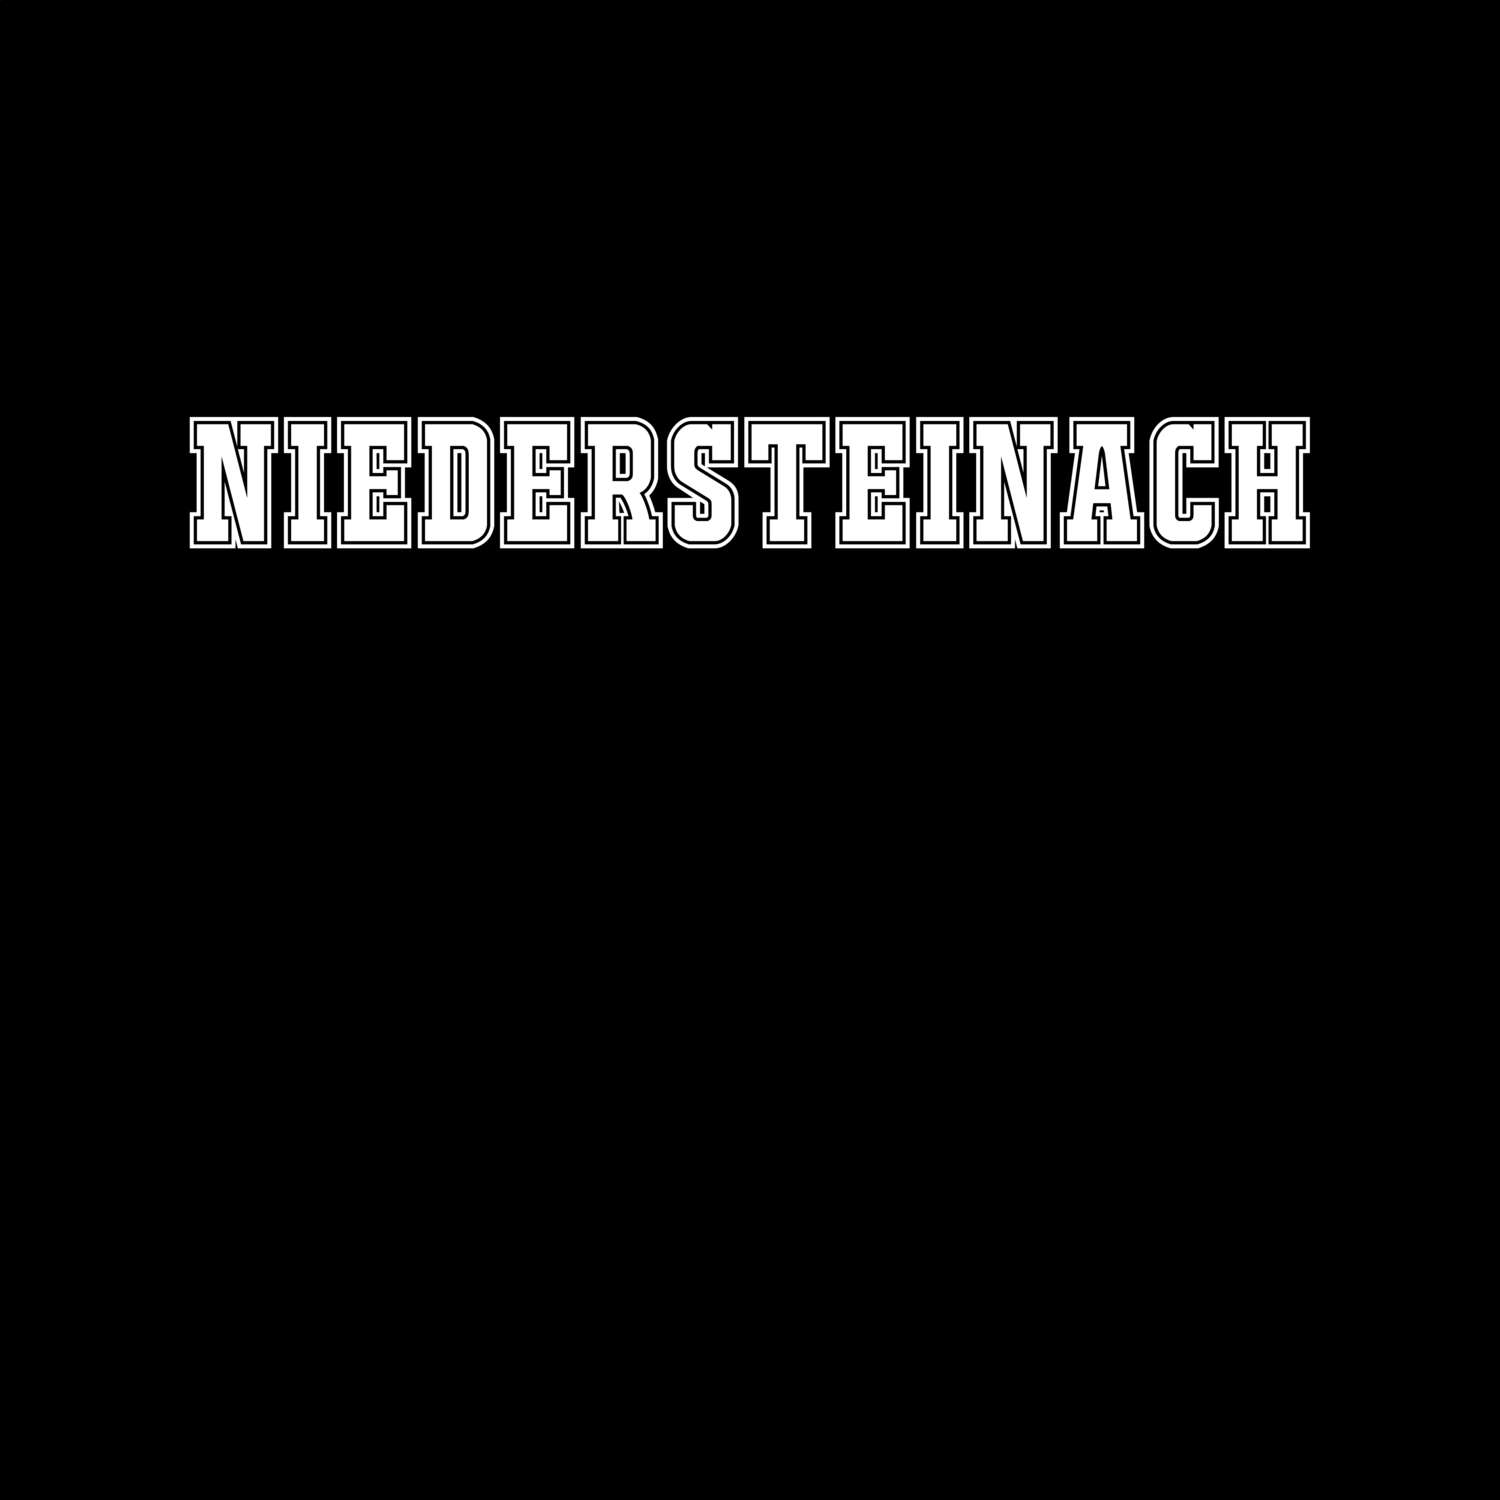 Niedersteinach T-Shirt »Classic«